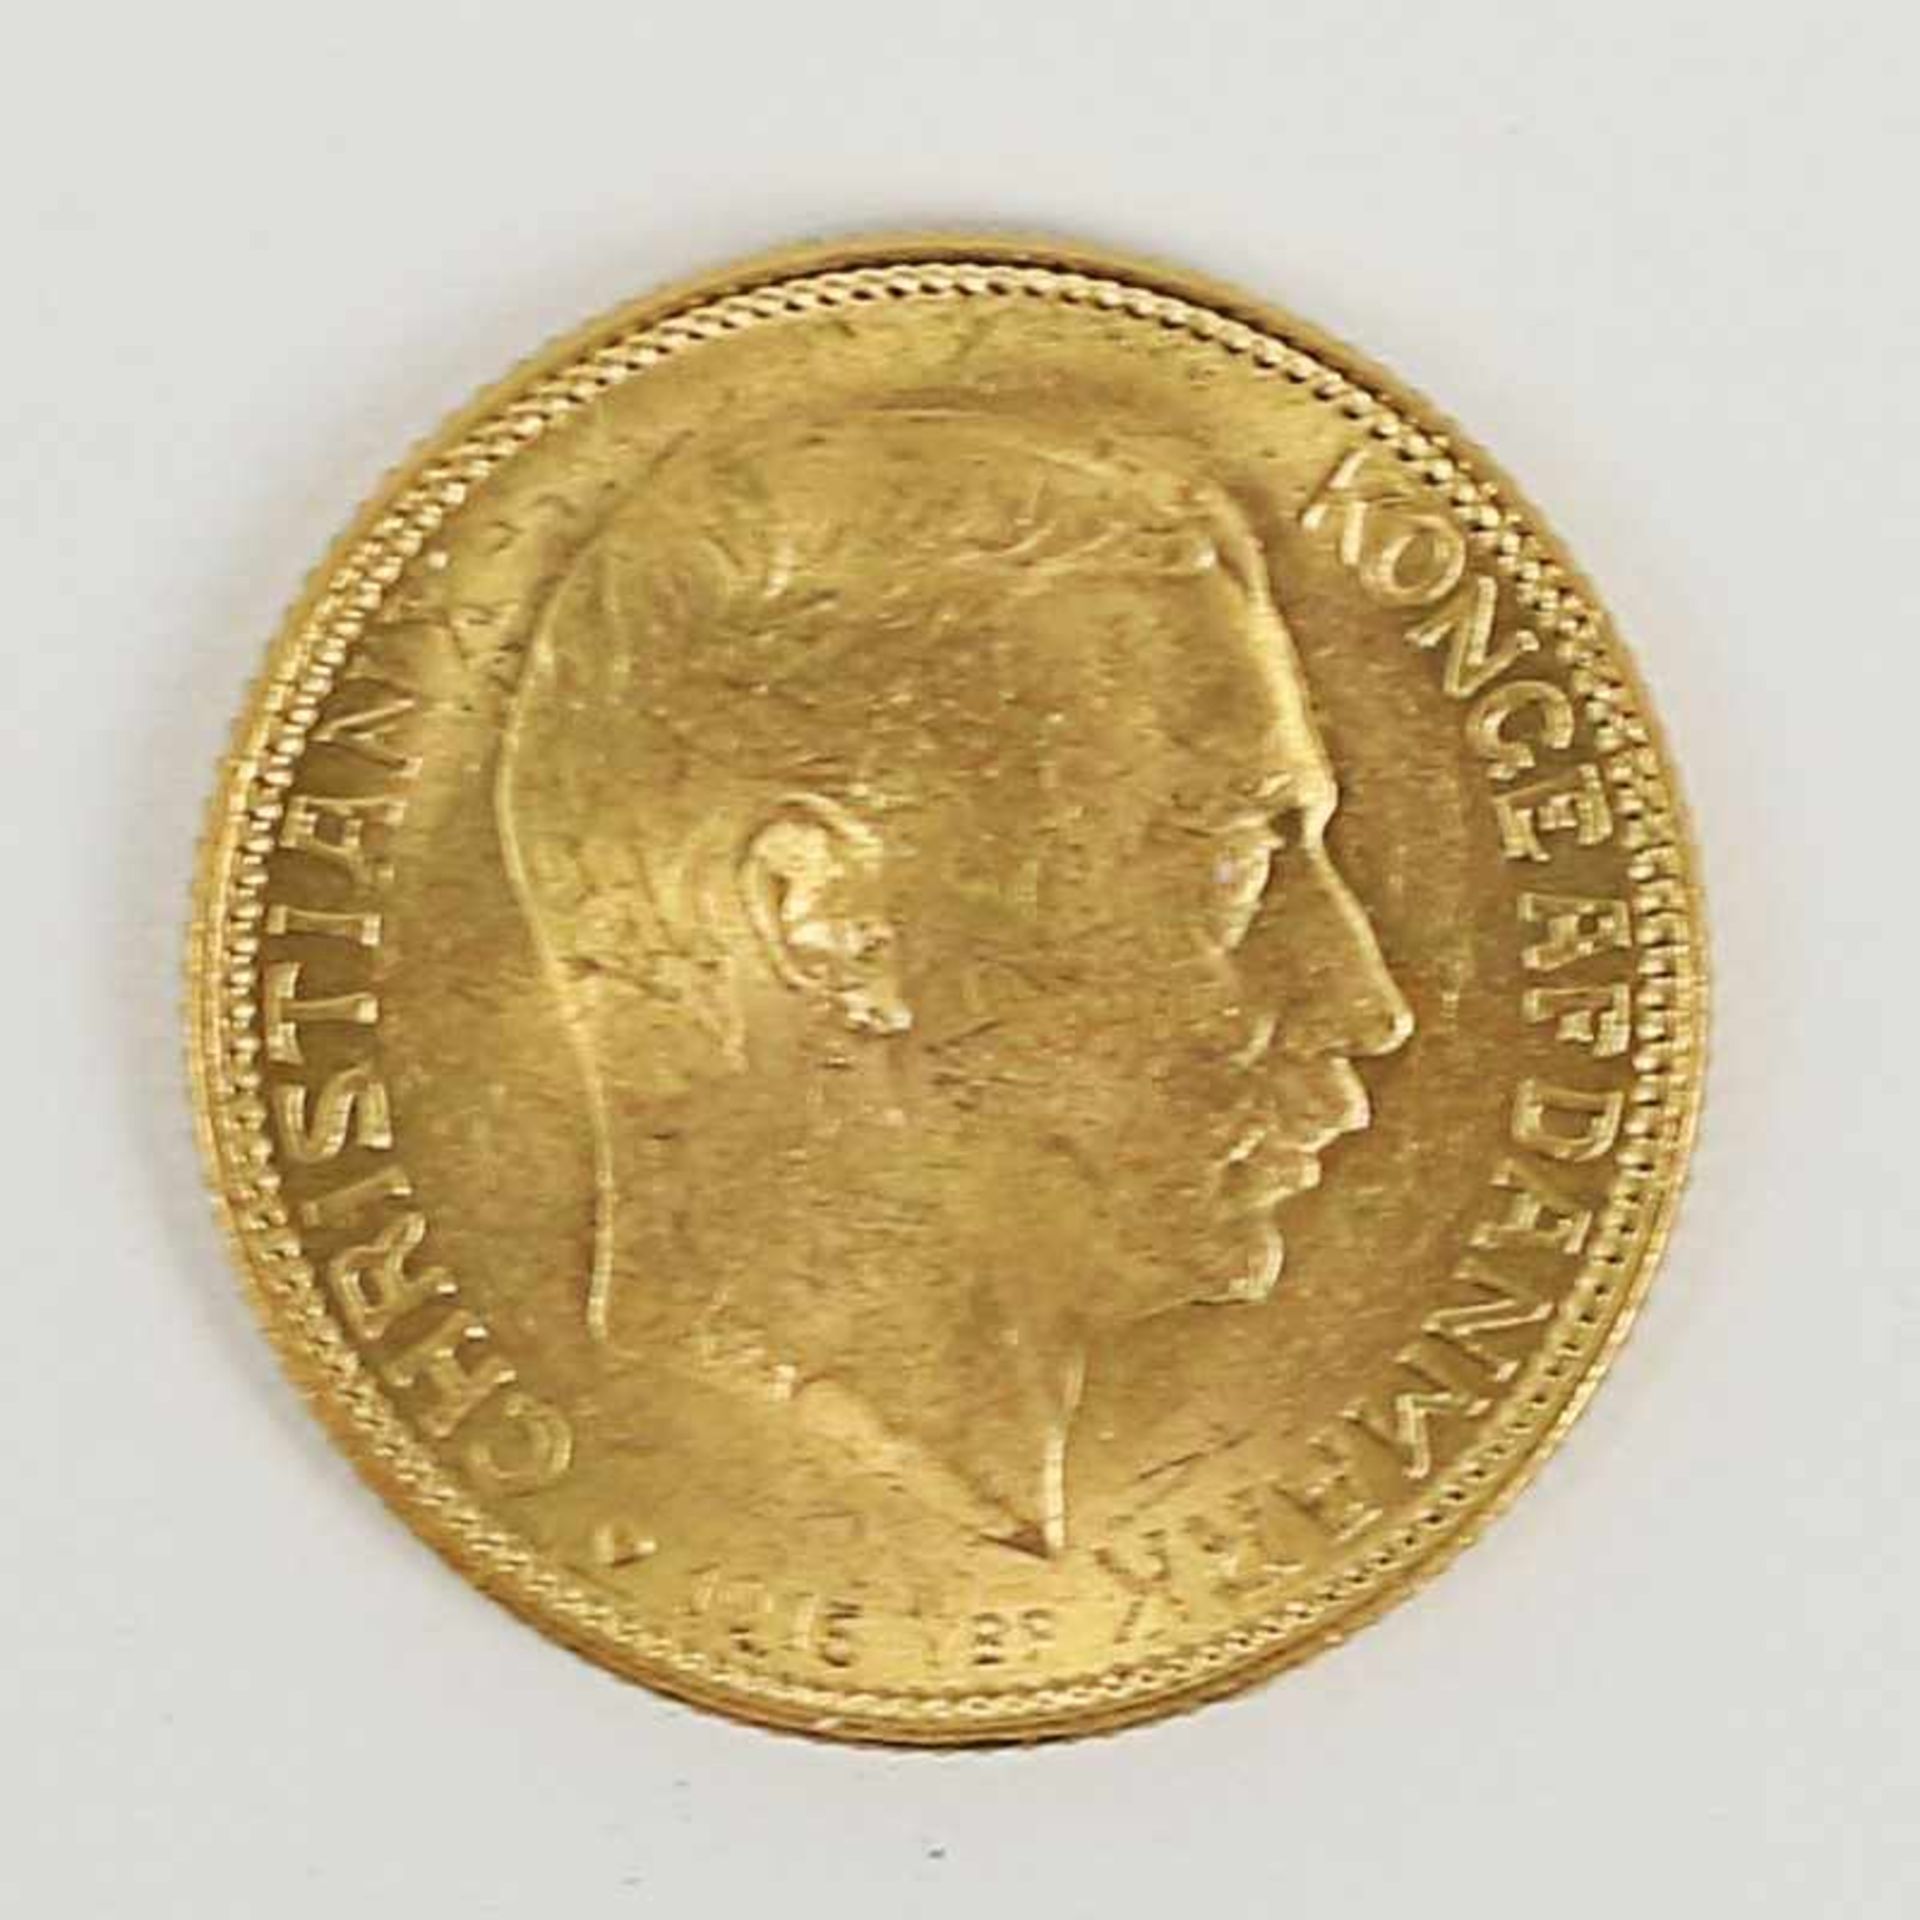 Gold Dänemark - 20 Kroner 1915 Christian IX 1873-1931, D 23mm, G 8g, vz